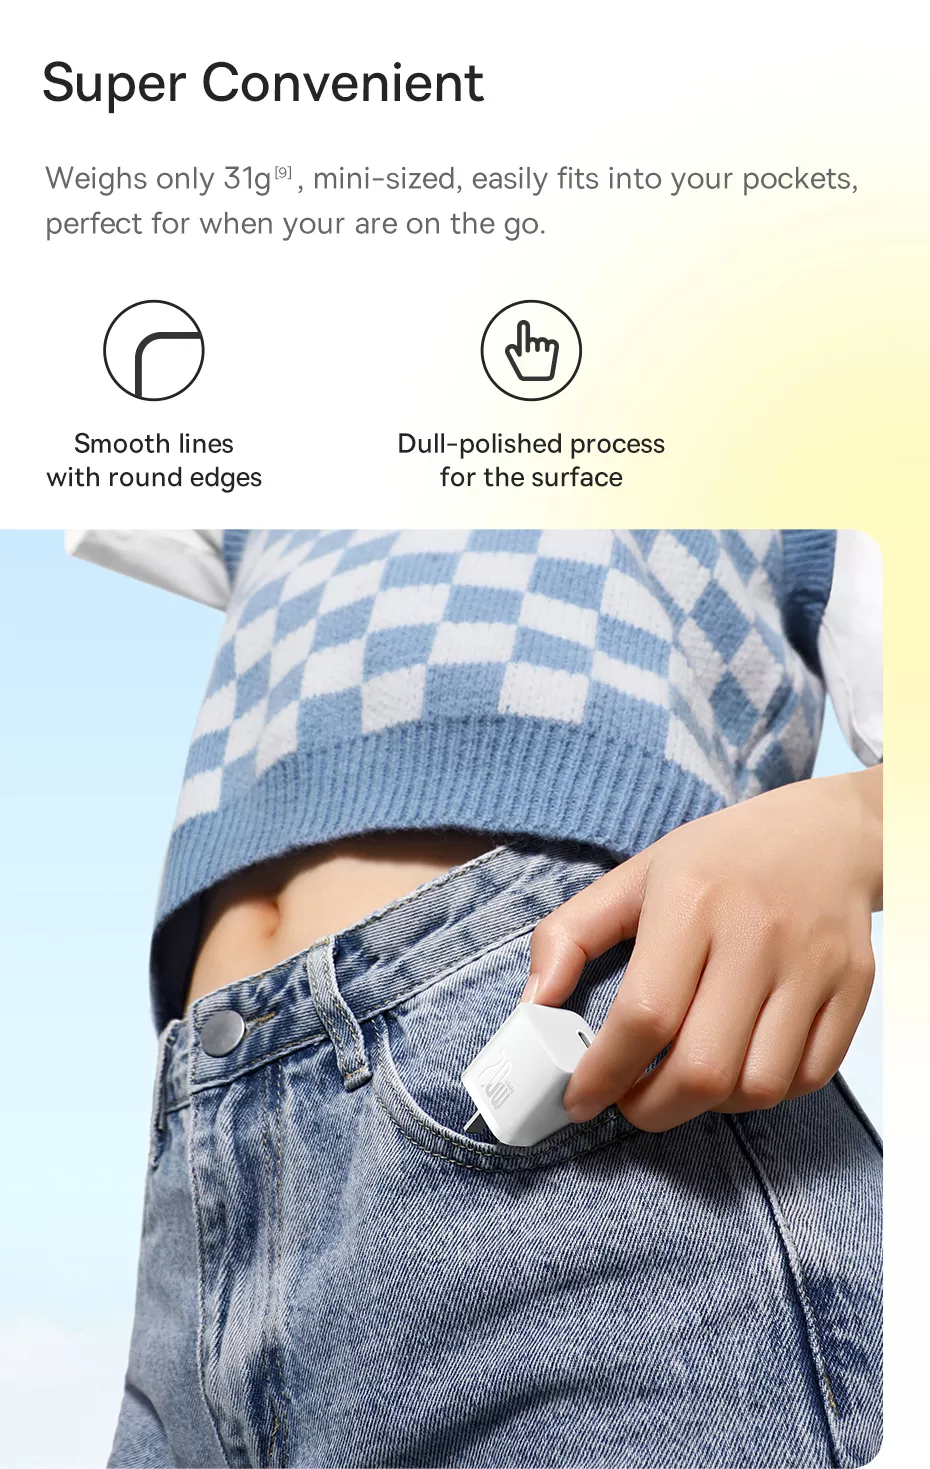 Hình ảnh Củ Sạc Nhanh Cho IPhone 20W Baseus GaN5 Fast Charger - Công Nghệ Power Delivery 3.0 QC 3.0 - Tích Hợp Chip Thông Minh - Công Nghệ Kiểm Soát Nhiệt Độ BCT - Hàng Chính Hãng